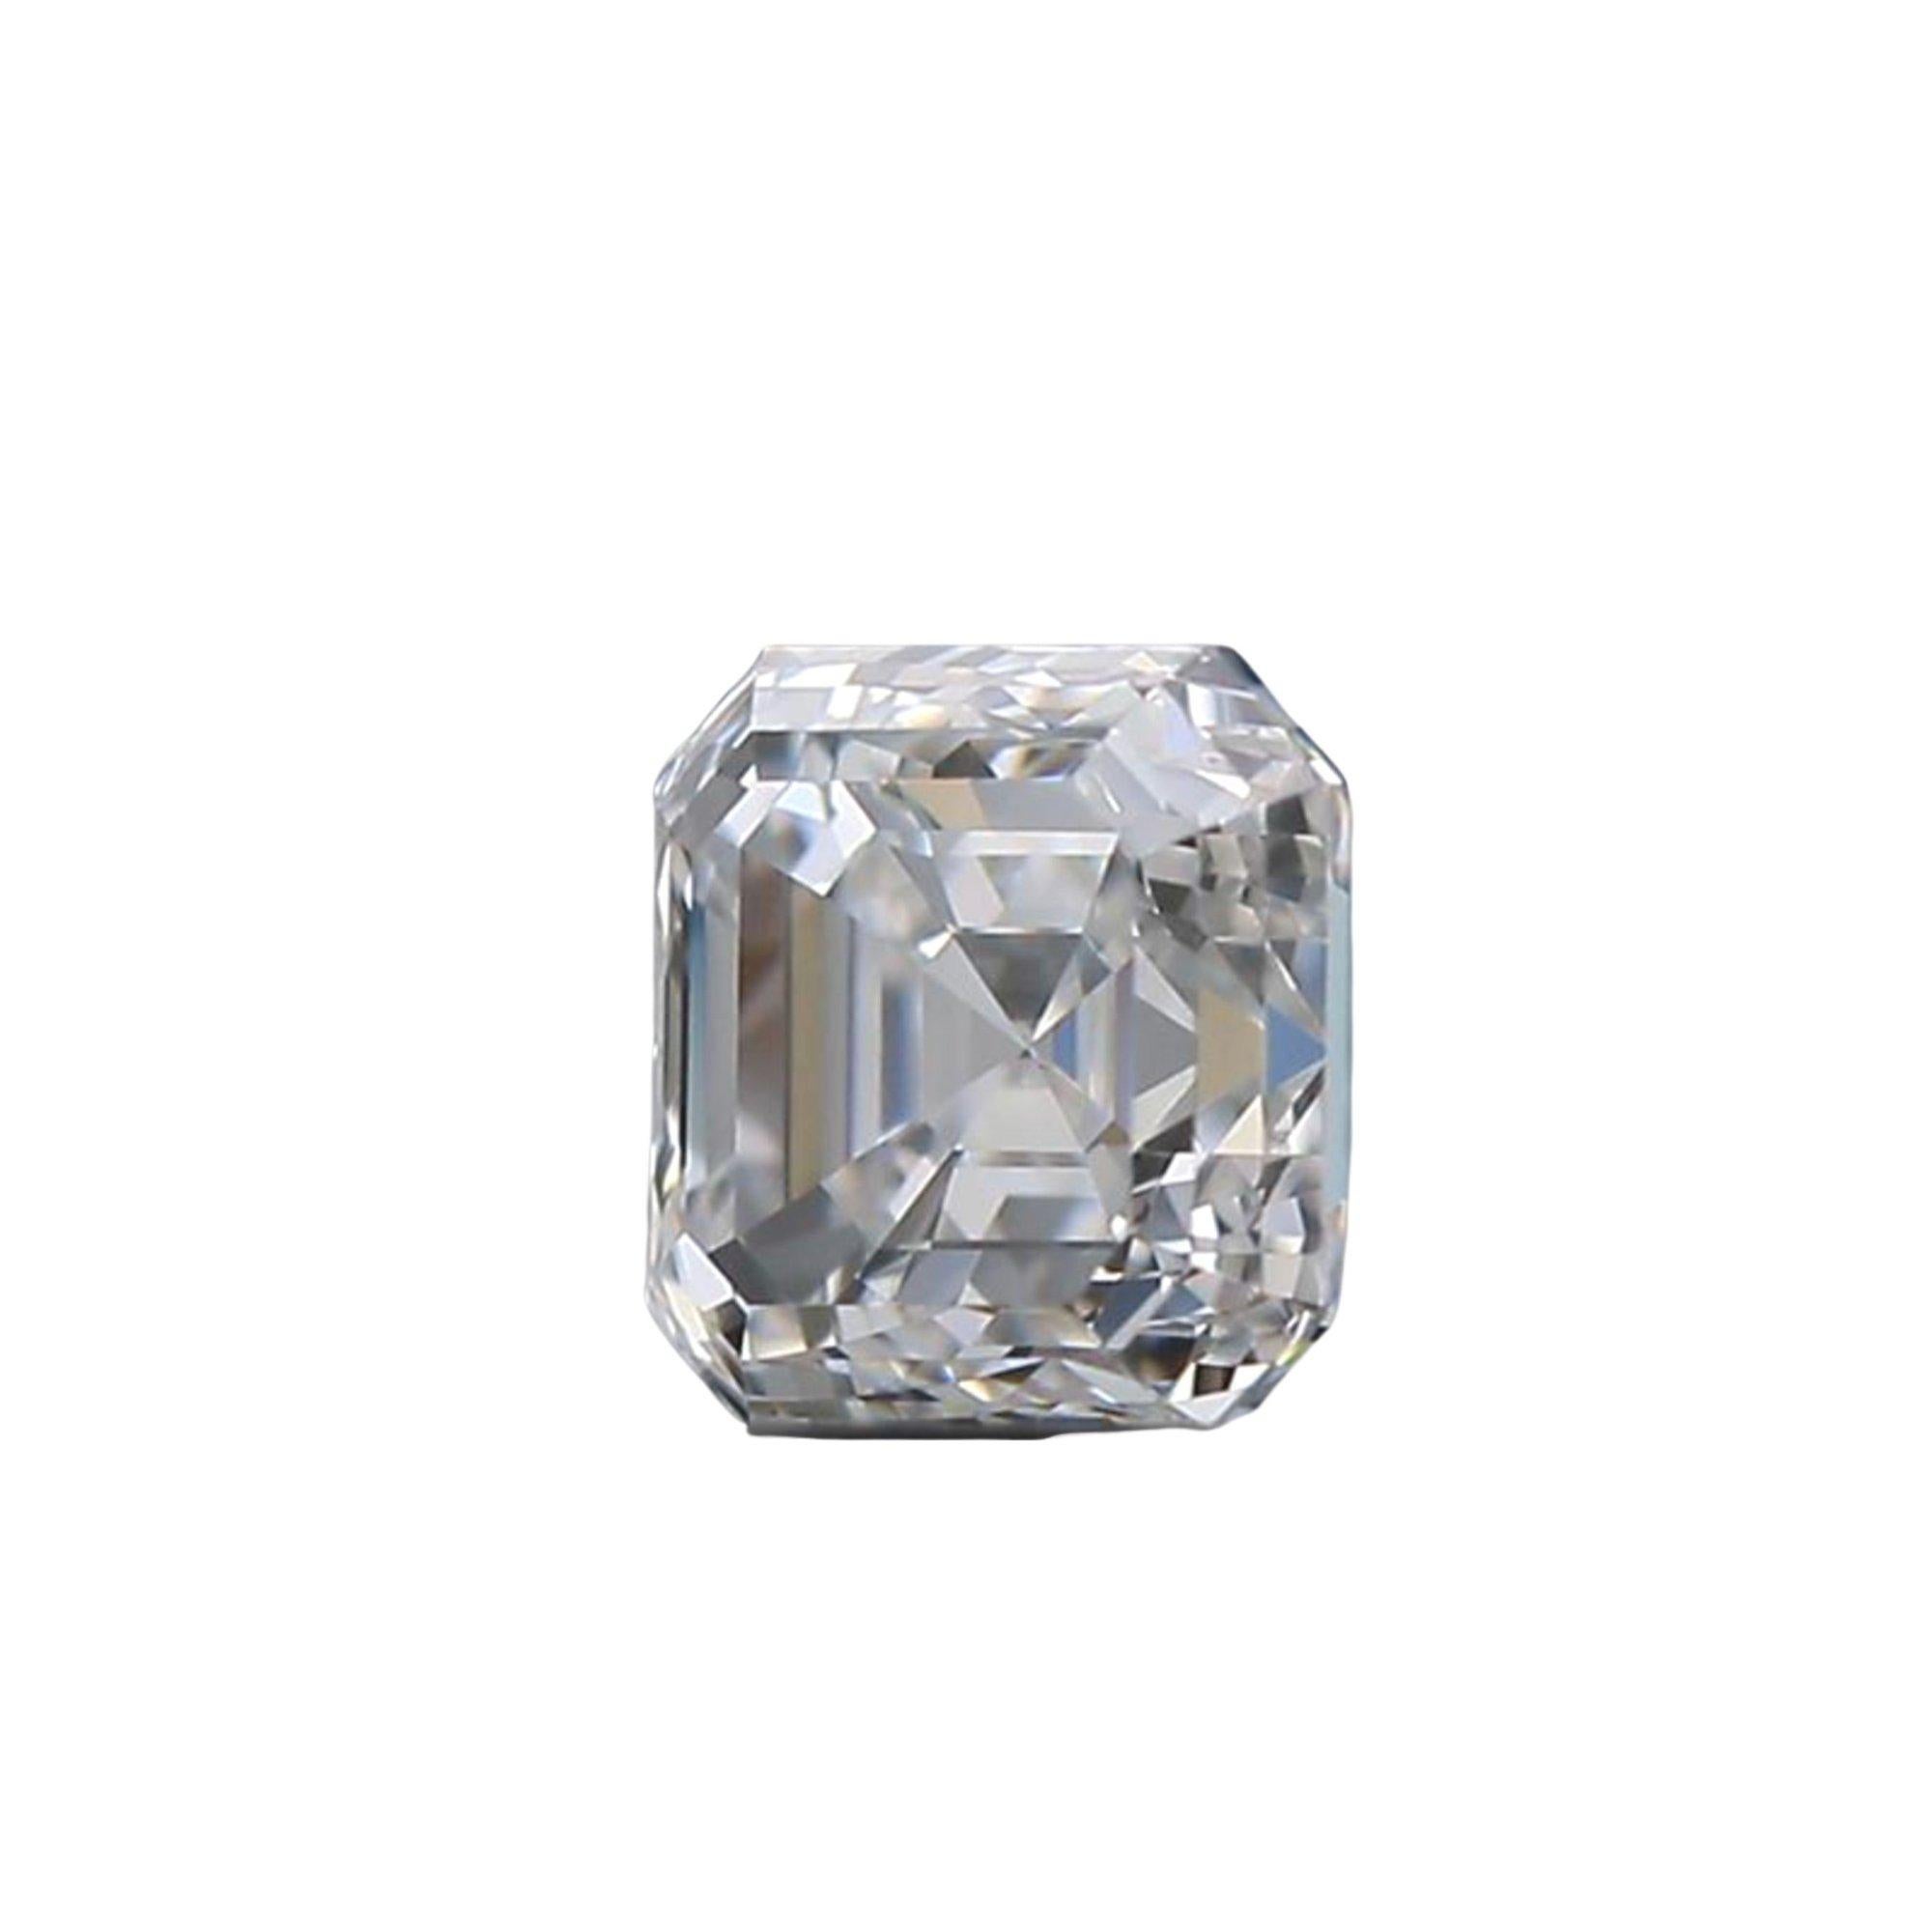 Idéale et magnifique paire de diamants Asher cl d'un poids total de 1,85 carat et d'un grade D VVS1 provenant du laboratoire GIA, avec certificat et numéro d'inscription au laser.

Rapport GIA no. 6395331986

Sku : P-344-mrk245
